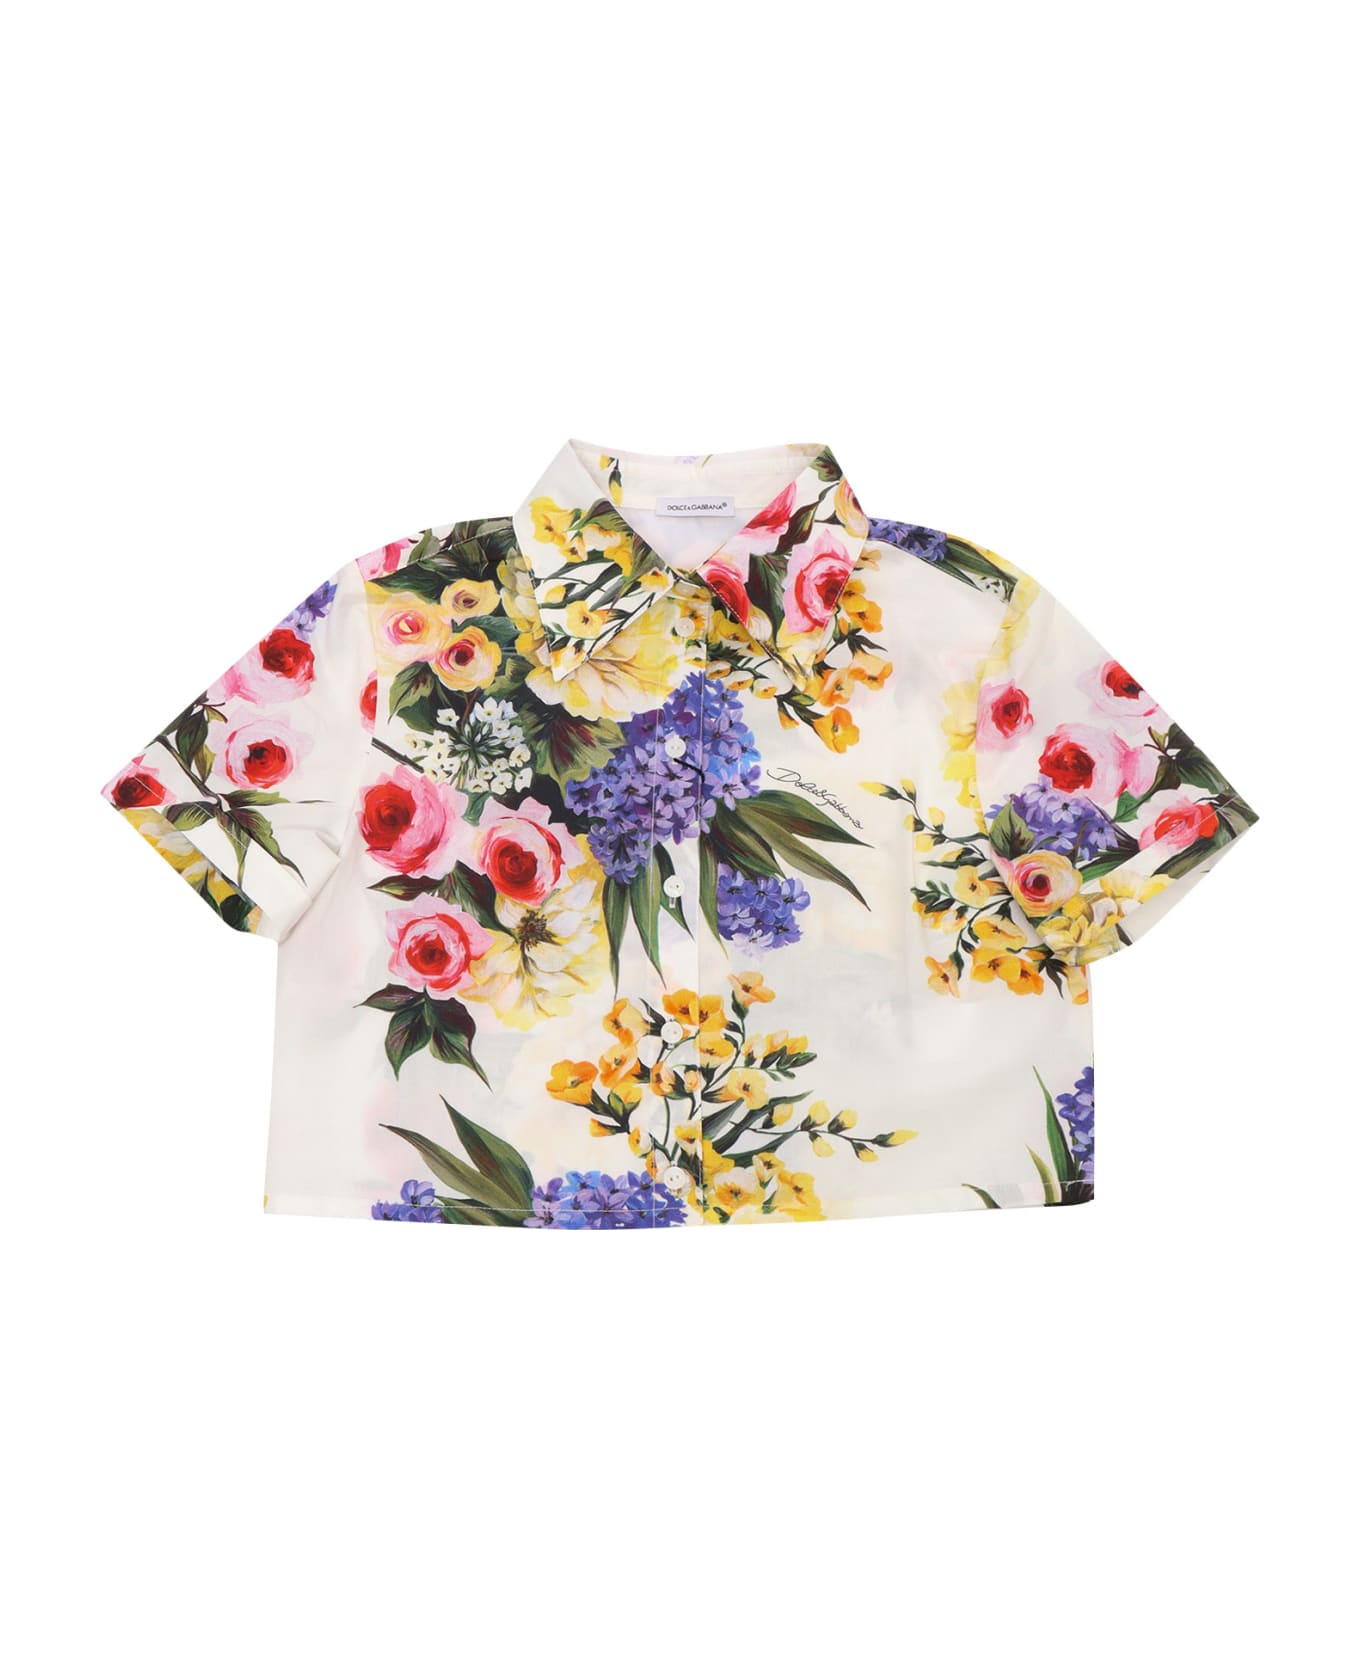 Dolce & Gabbana Floral D&g Shirt - GREEN シャツ